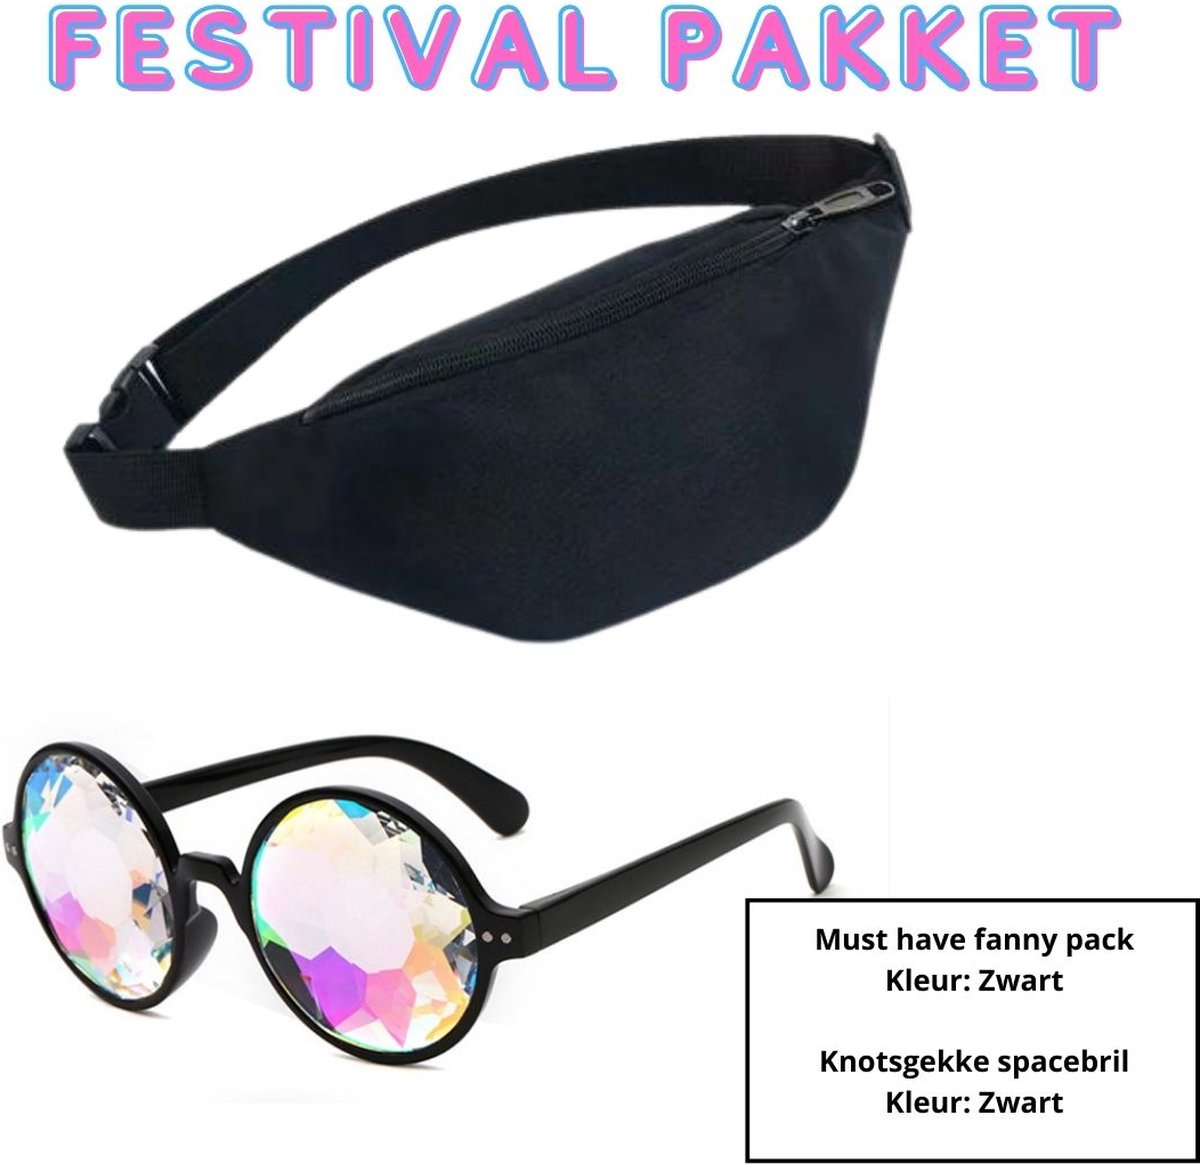 Heuptas / festival fanny pack (zwart) 30x14x8 - Festival bril/spacebril (zwart)